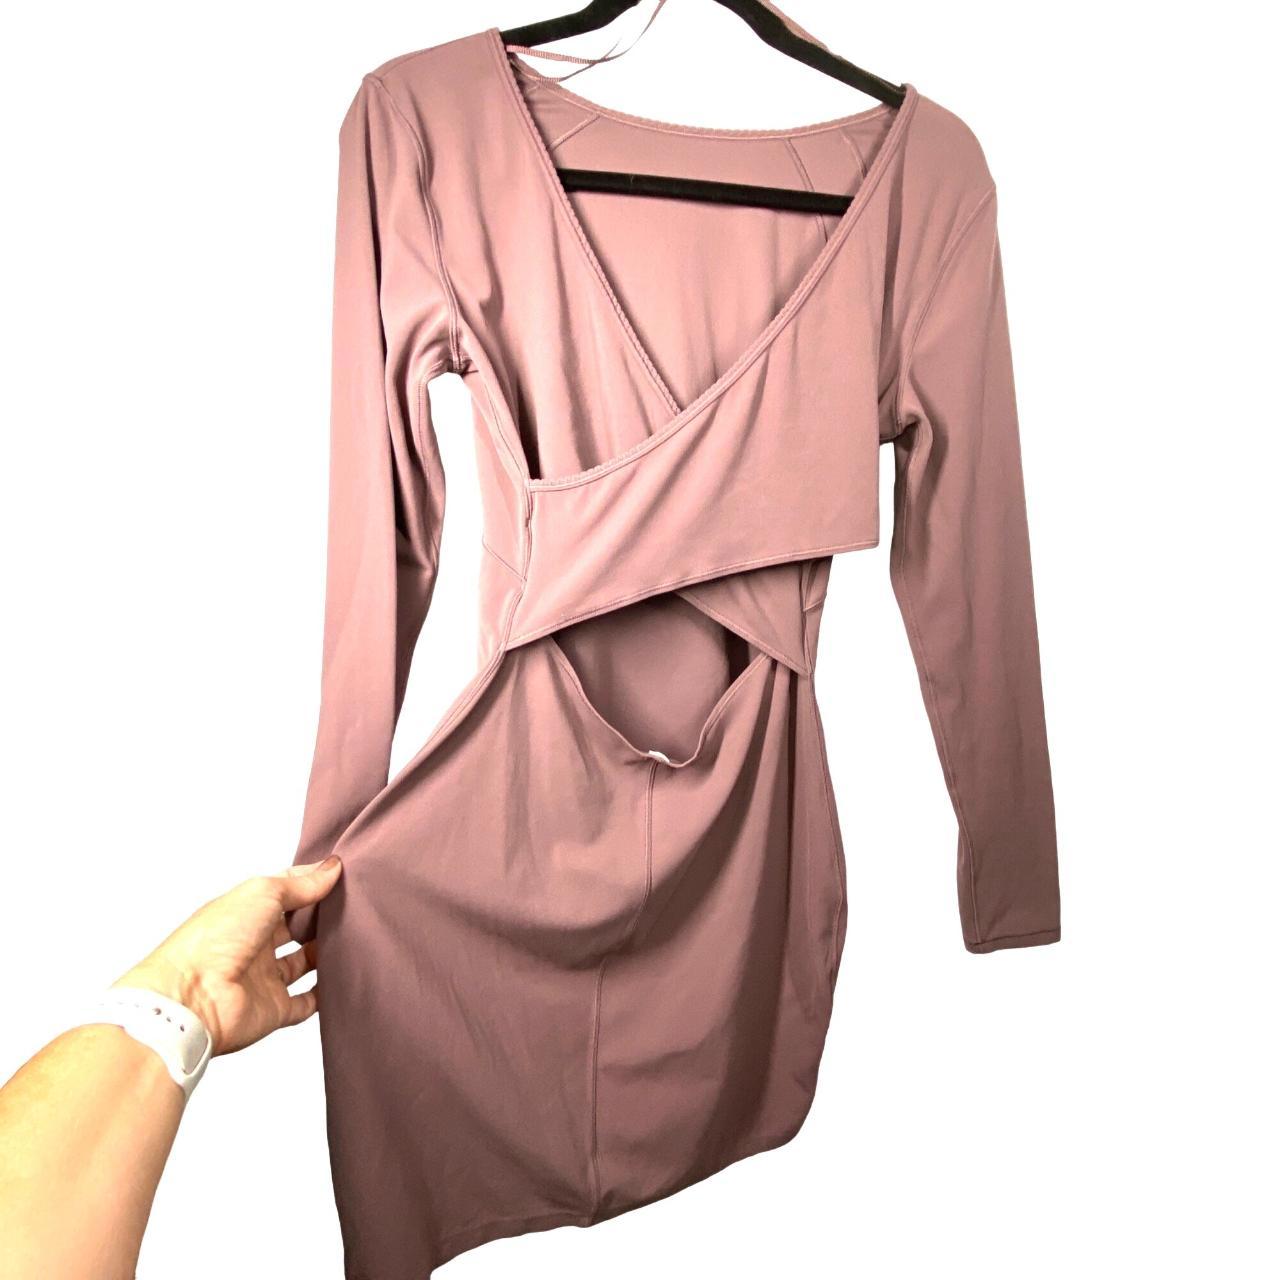 Features: • lululemon contour dress, nulu fabric, - Depop